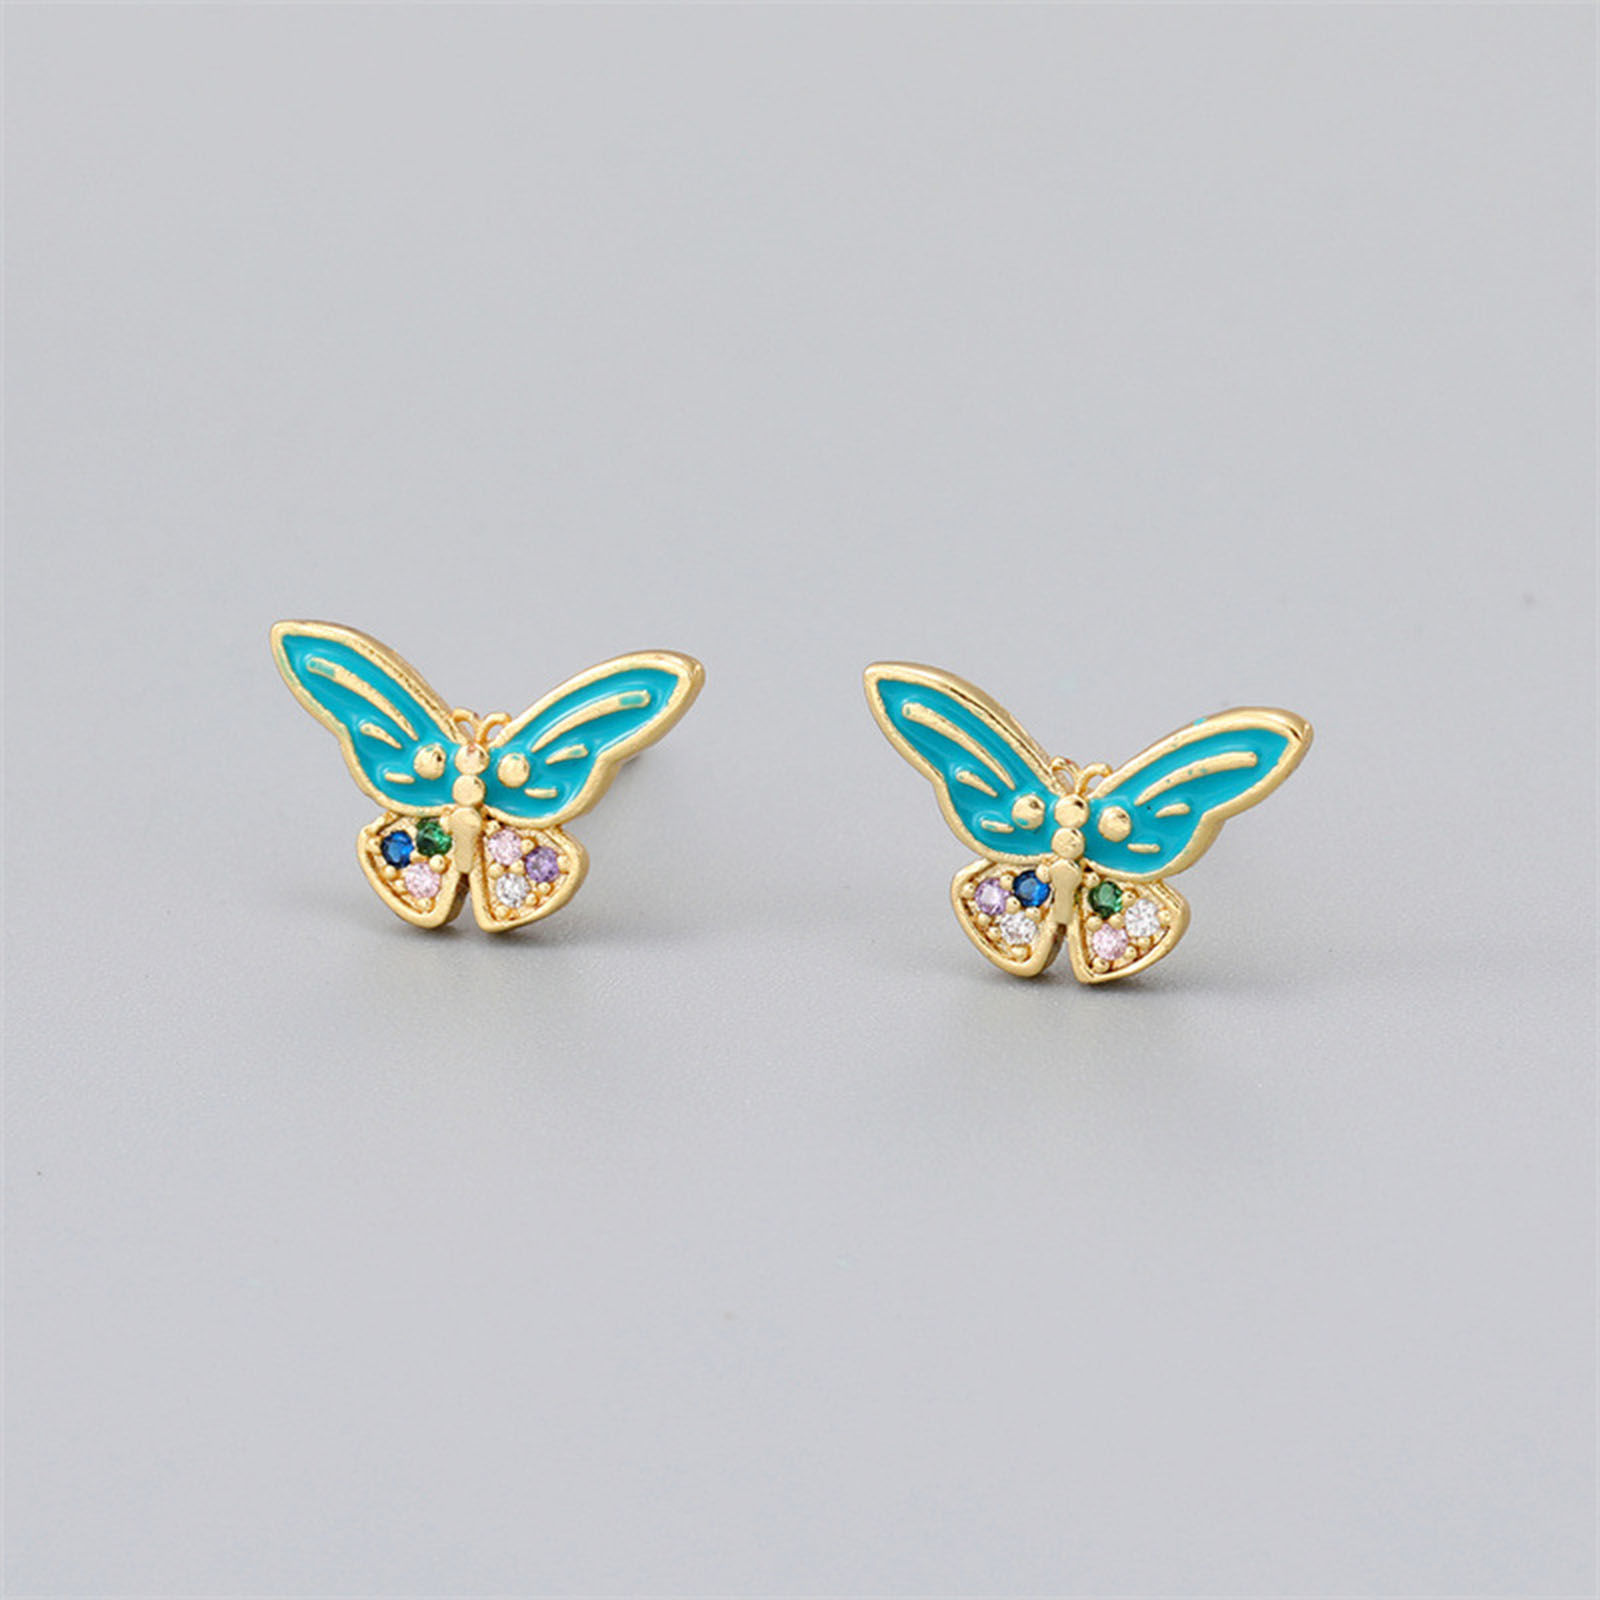 Bild von Kupfer Insekt Ohrring Ohrstecker Vergoldet Bunt Schmetterling Emaille 1 Paar